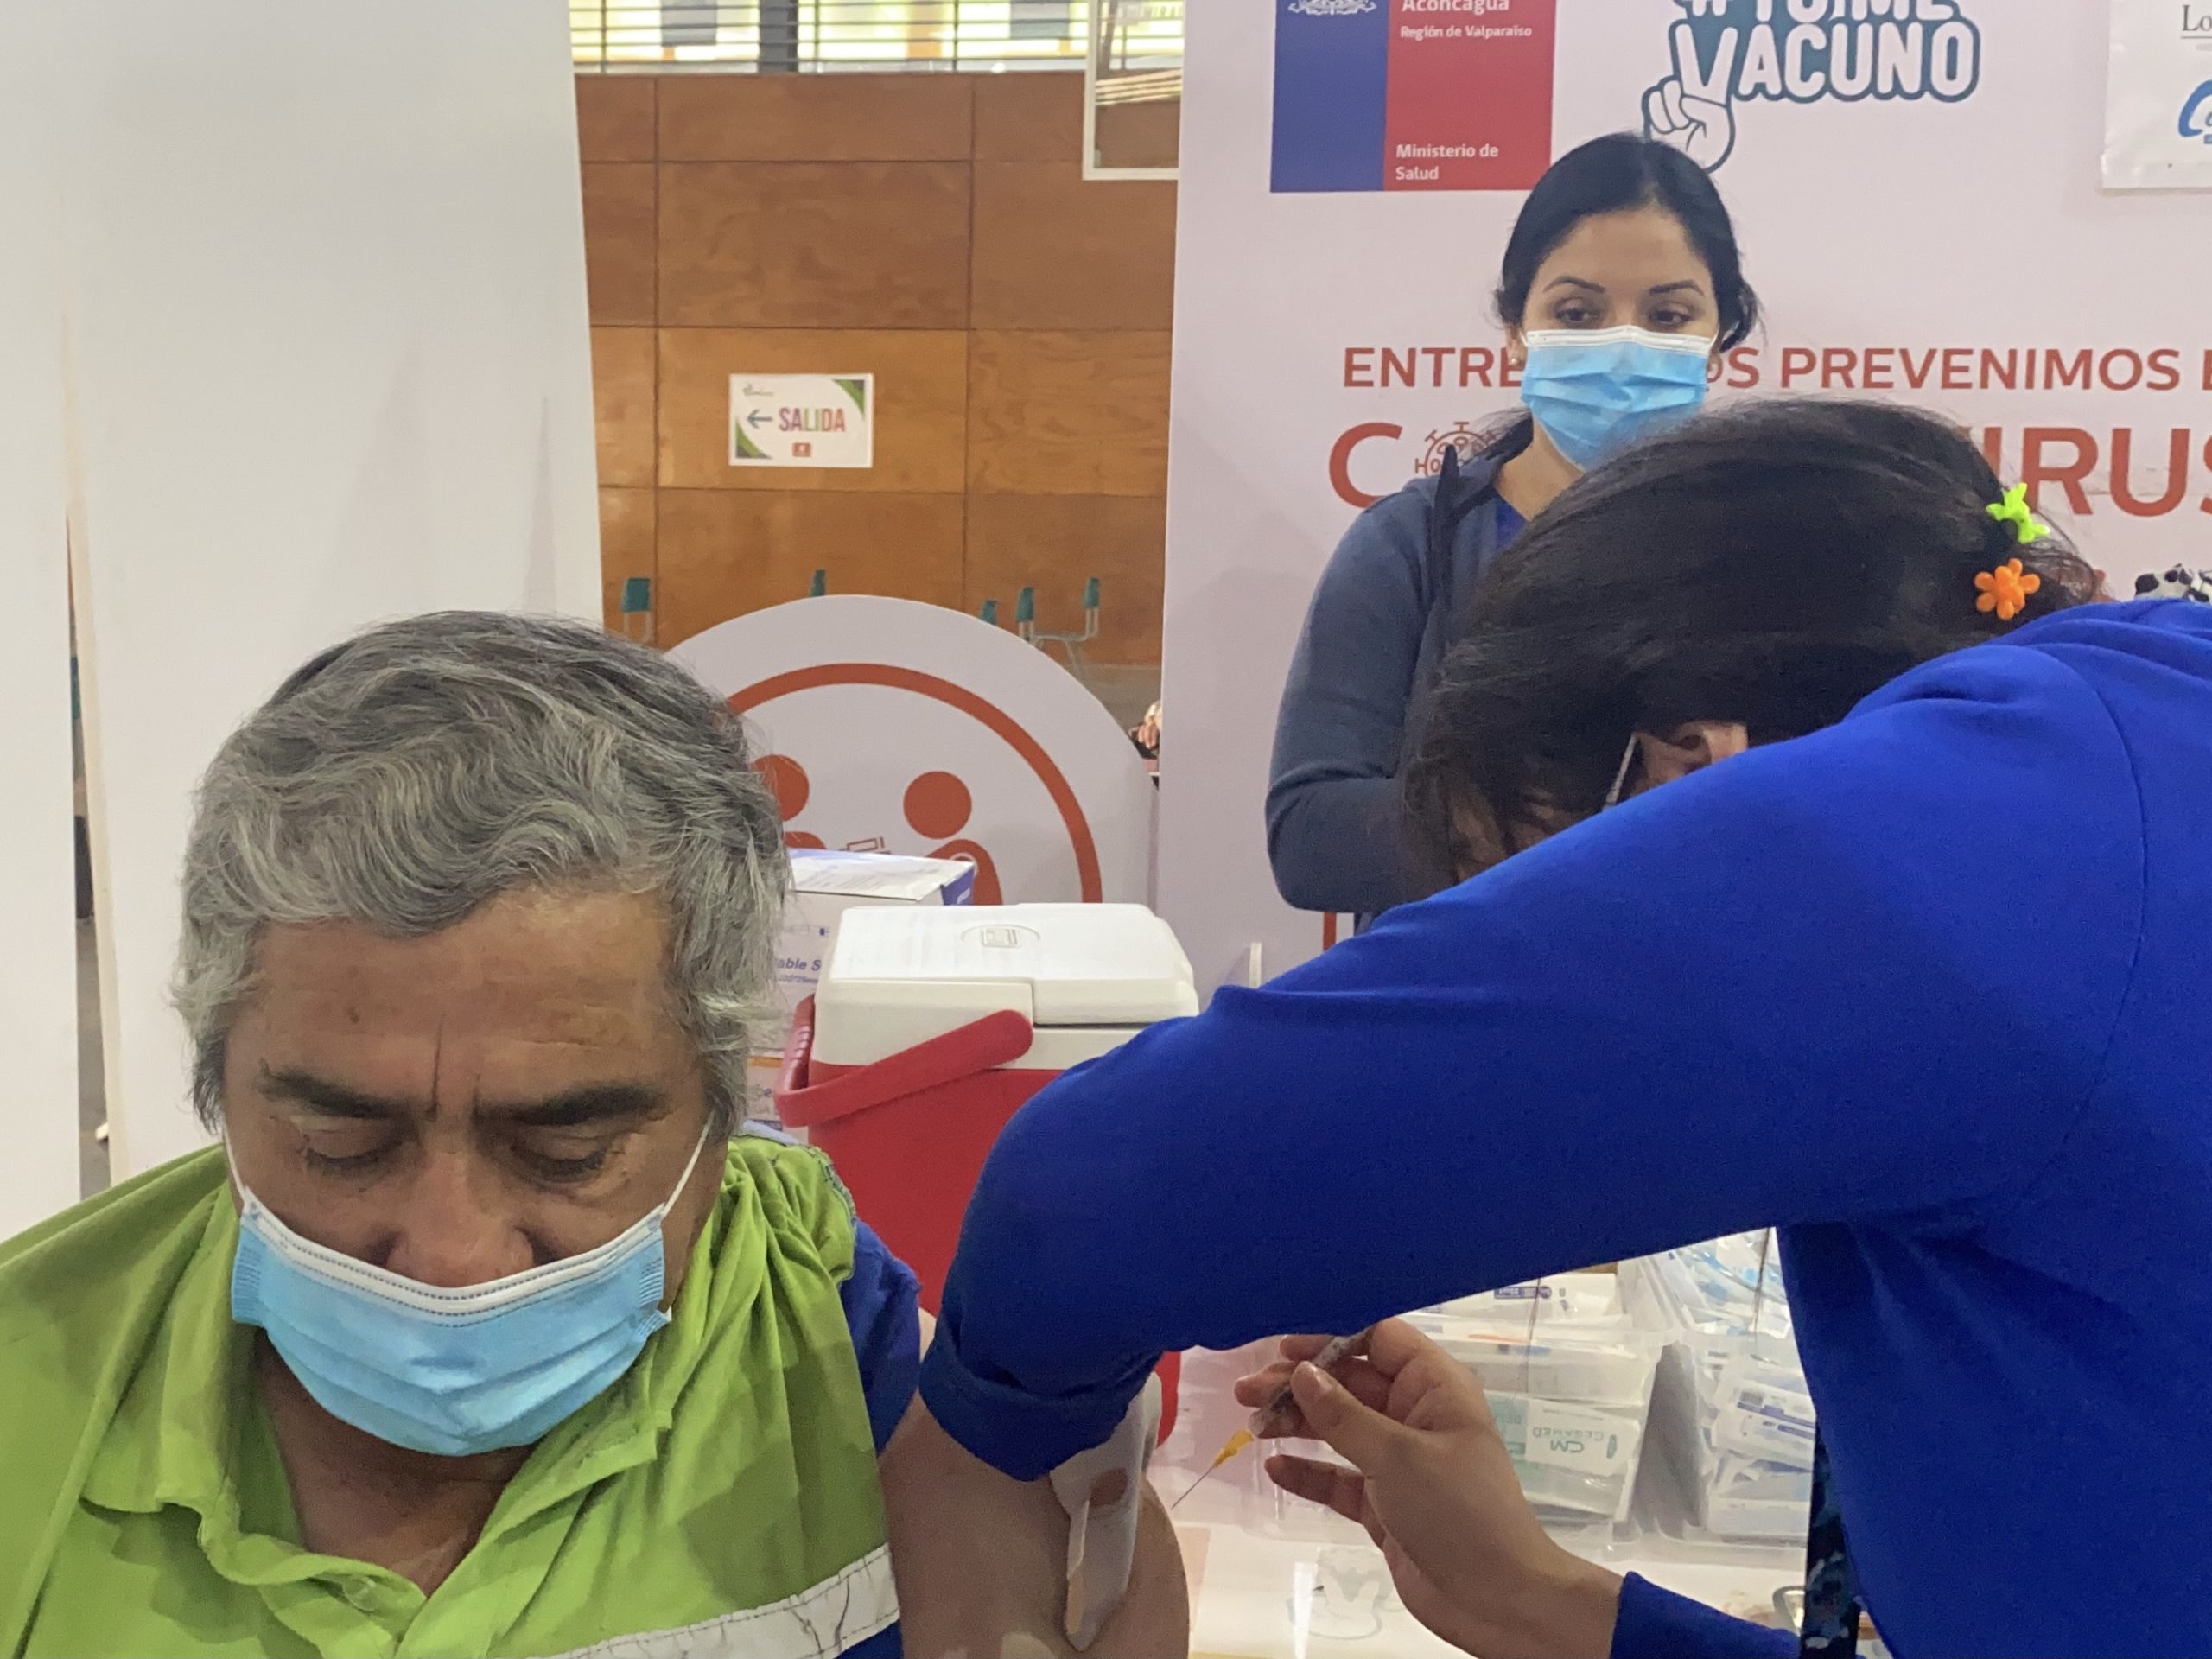 SALUD: Habilitan vacunación contra Covid-19 los días sábado en Los Andes  Para dar continuidad y fortalecer el proceso de inoculación tanto de primeras dosis como dosis de refuerzo